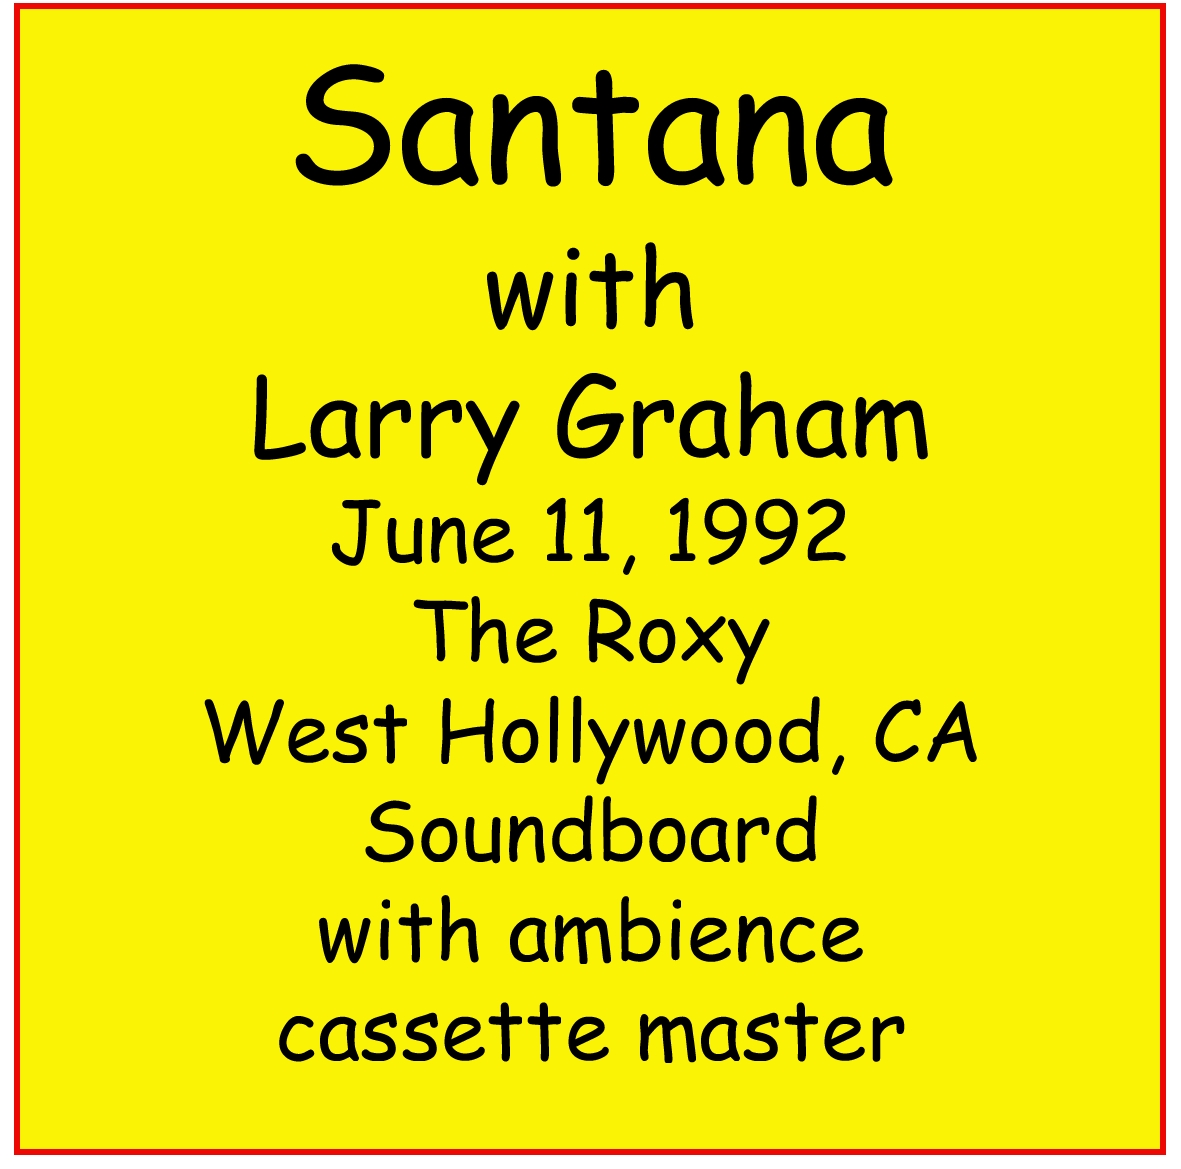 Santana1992-06-11SoundcheckTheRoxyNYC (2).jpg